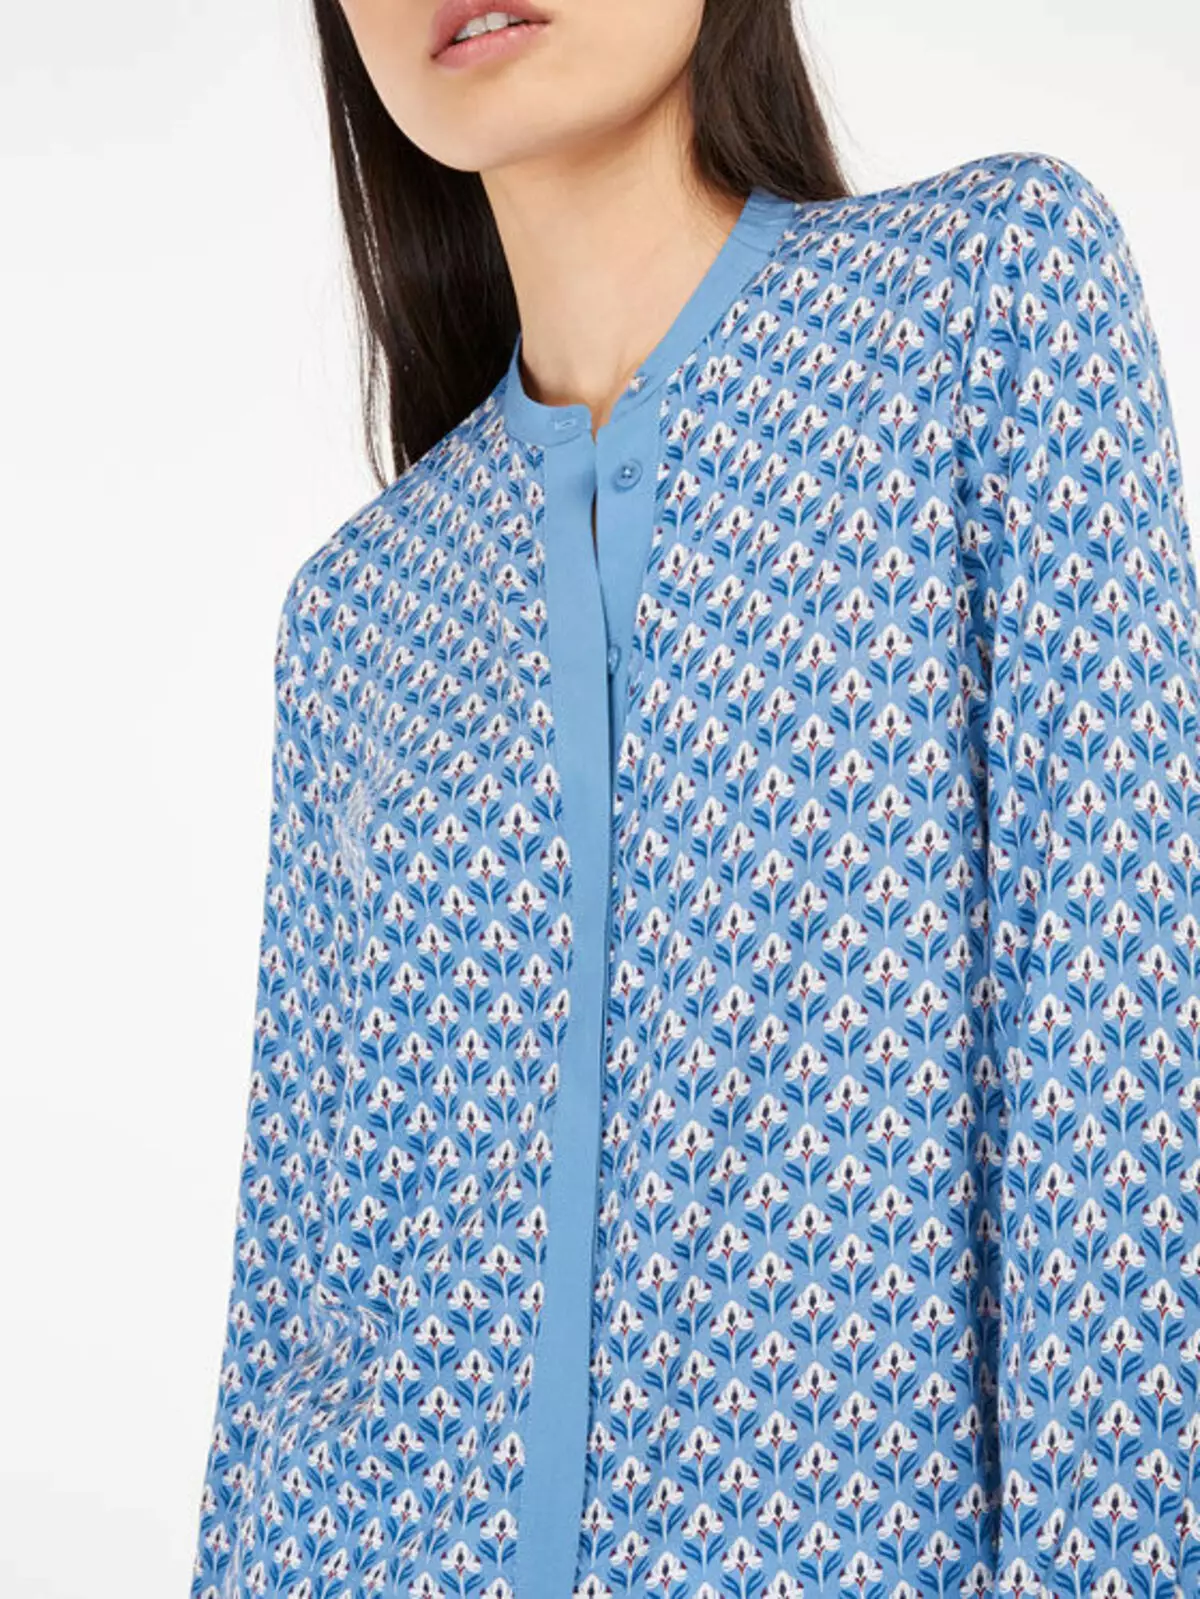 Chemise bleue pour femmes (112 photos): quoi porter et combiner une chemise bleue, bleu clair, pois, images à la mode 1217_59